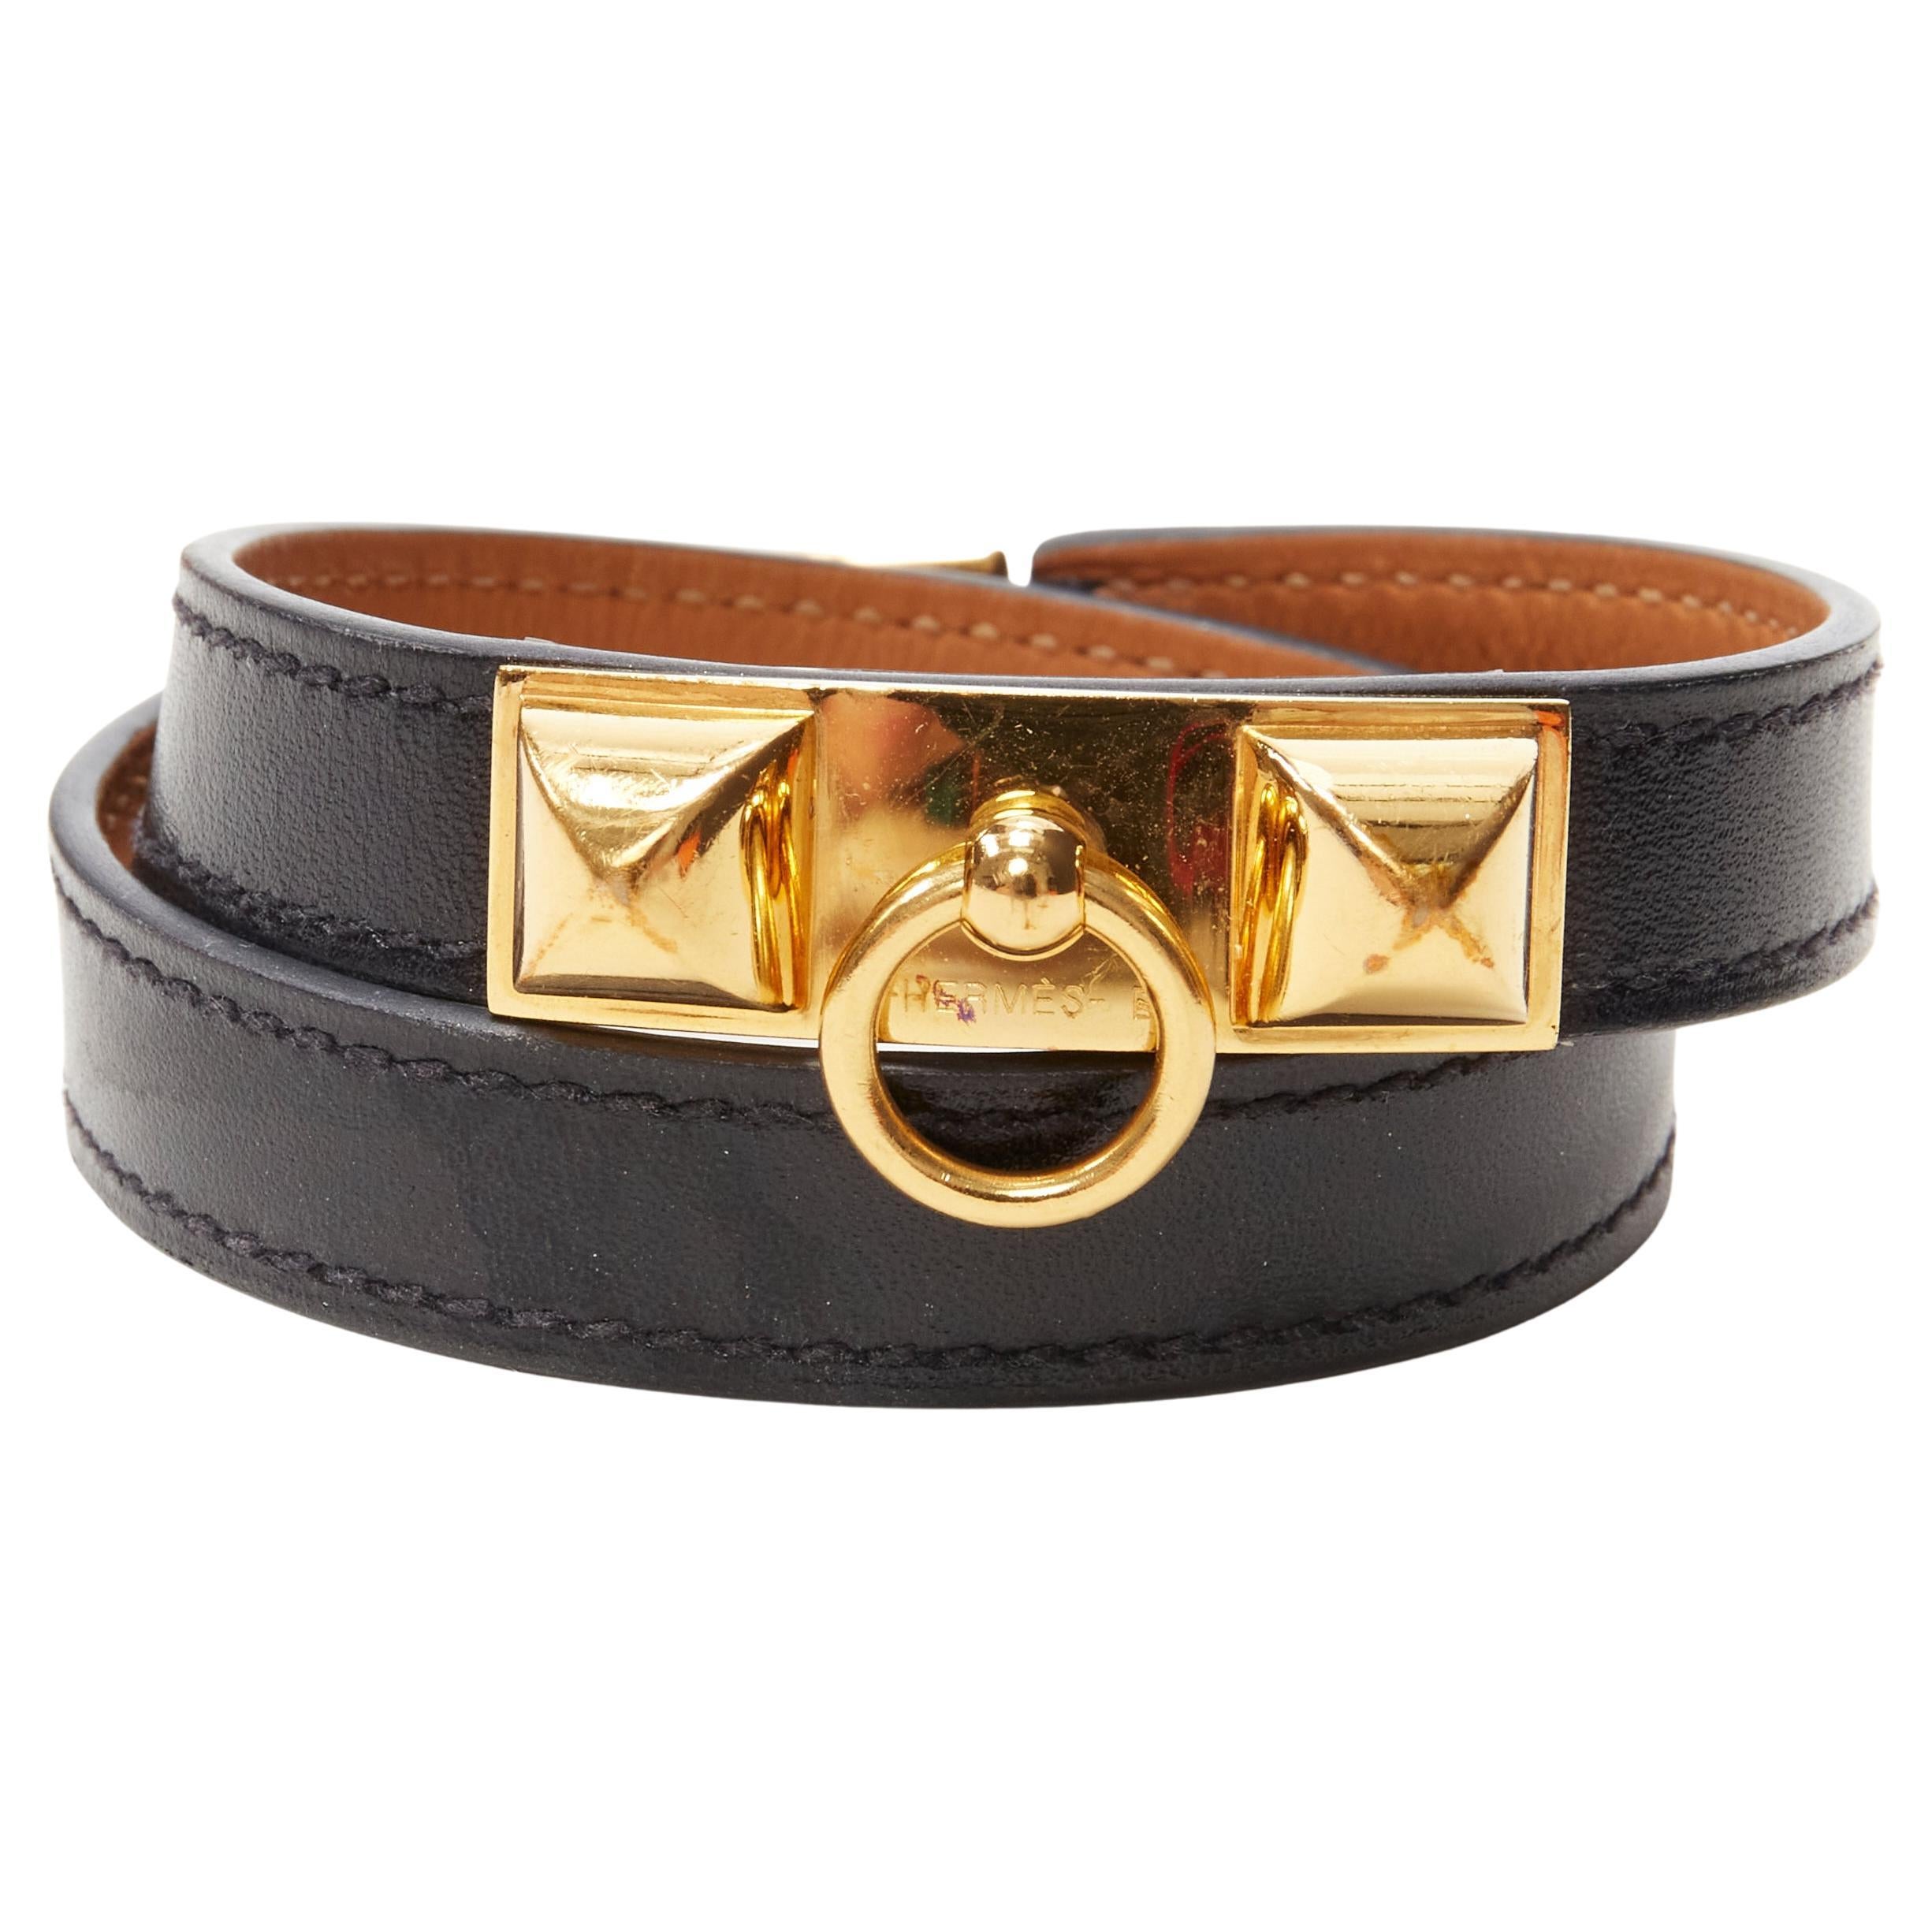 HERMES Rivale Double Tour GHW gold Collier stud black leather wrap bracelet